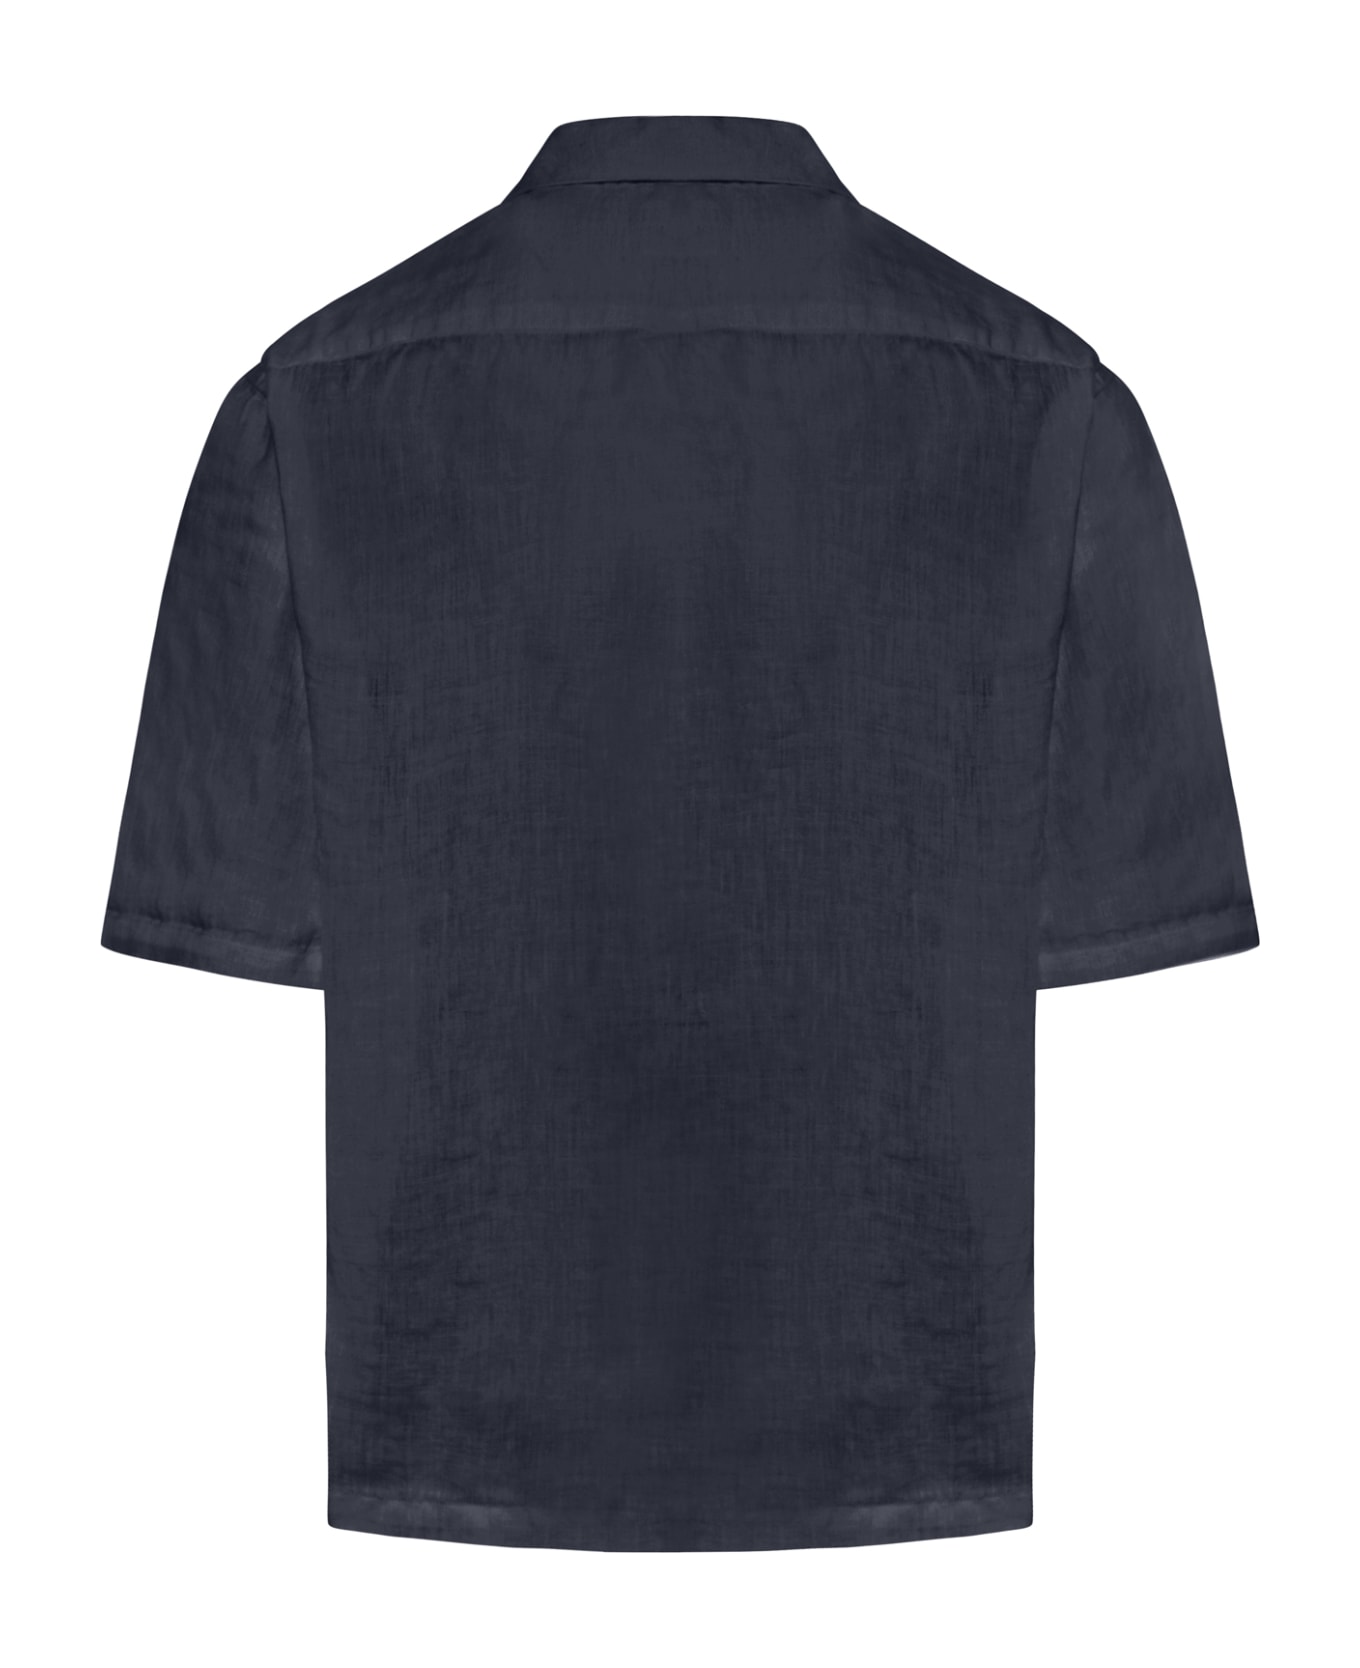 120% Lino Short Sleeve Men Shirt - Navy Blue